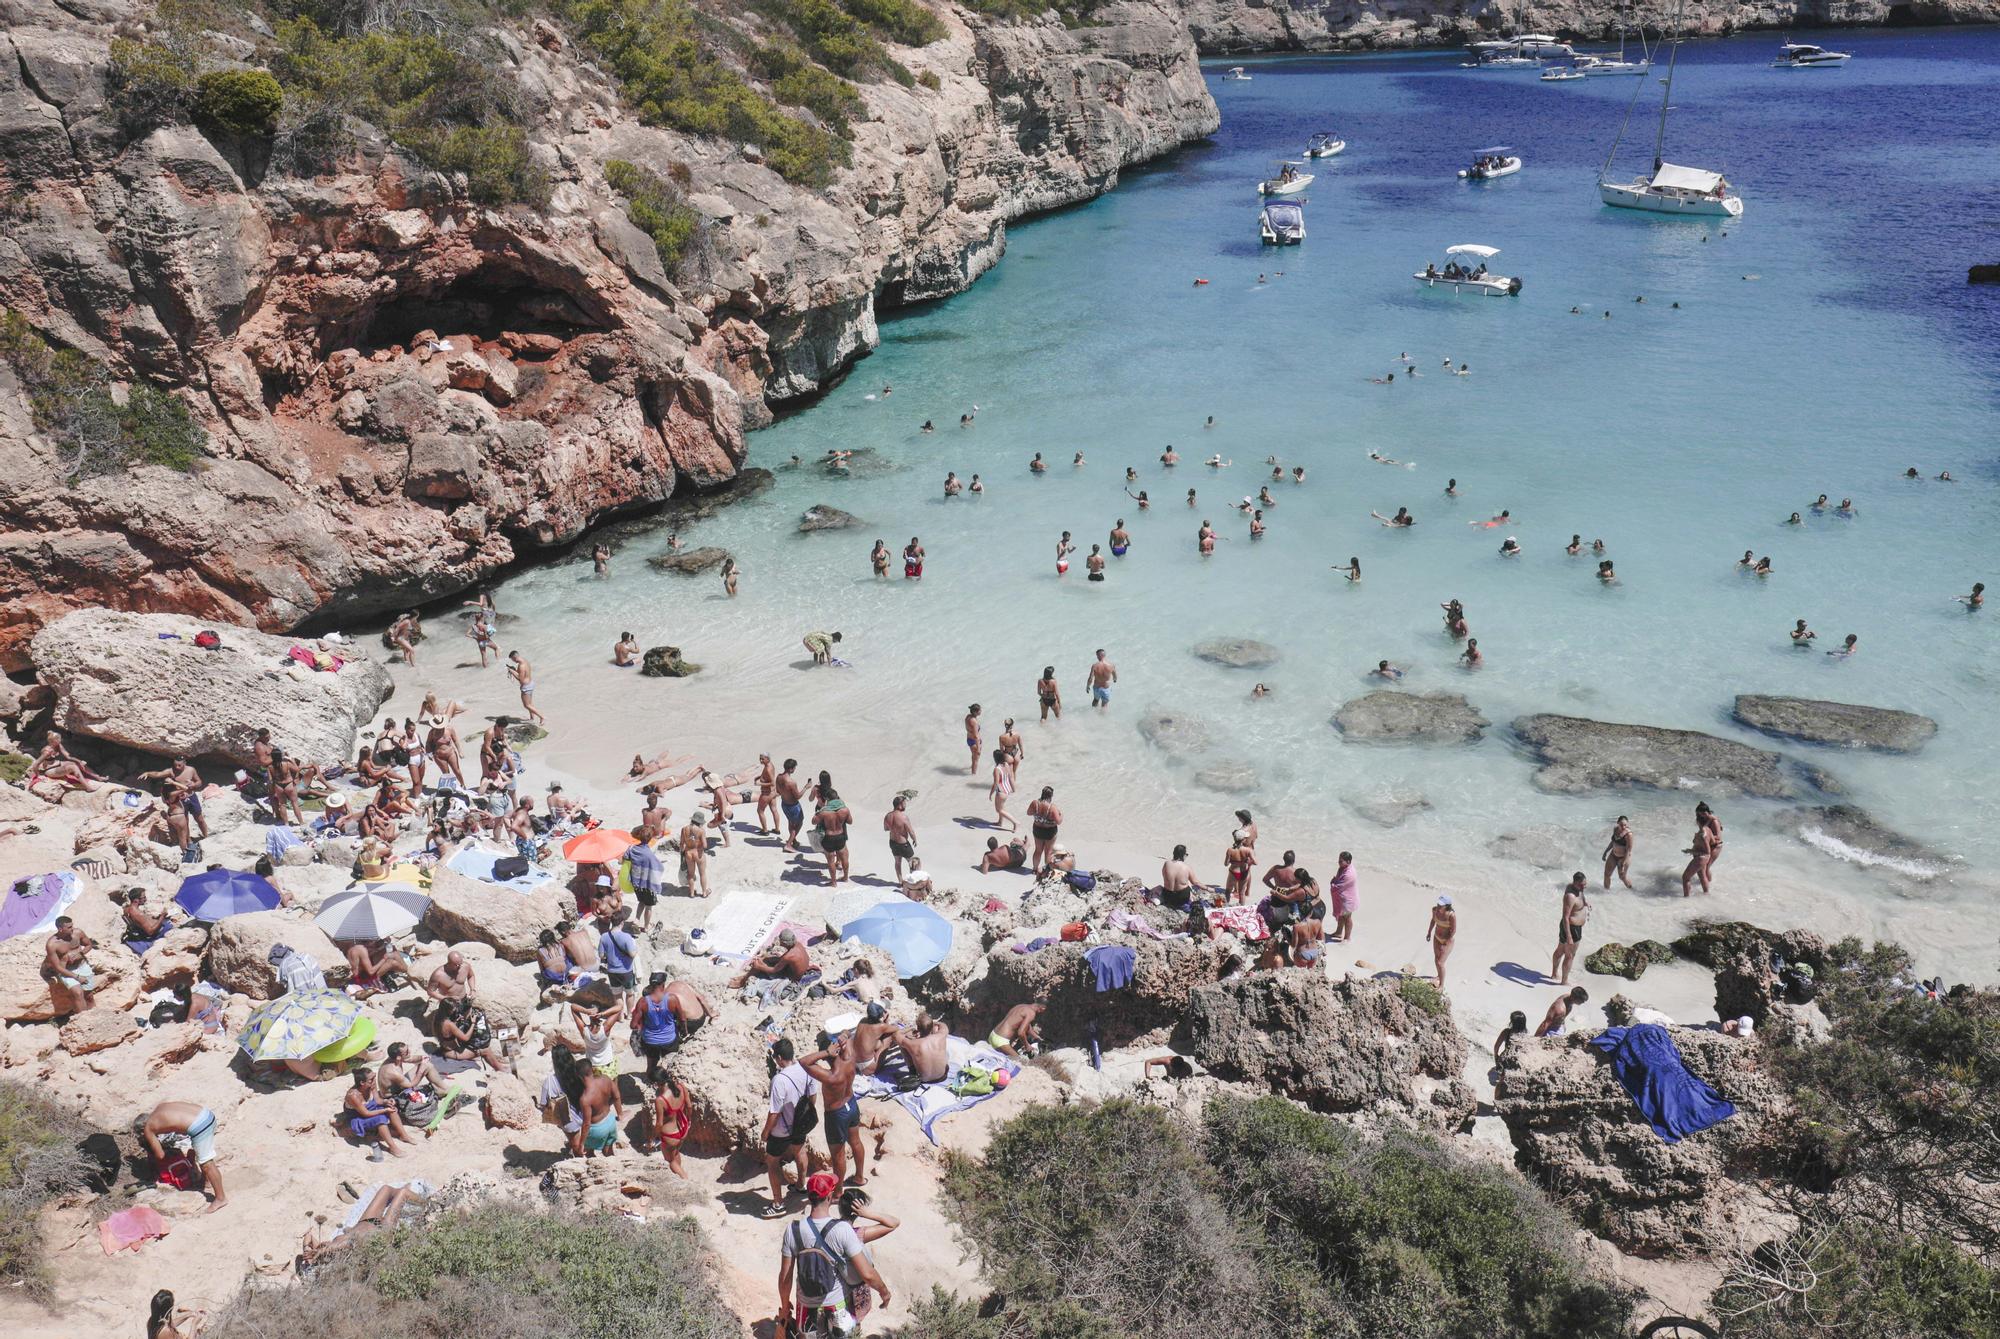 Saturación turística | Mallorca se desborda